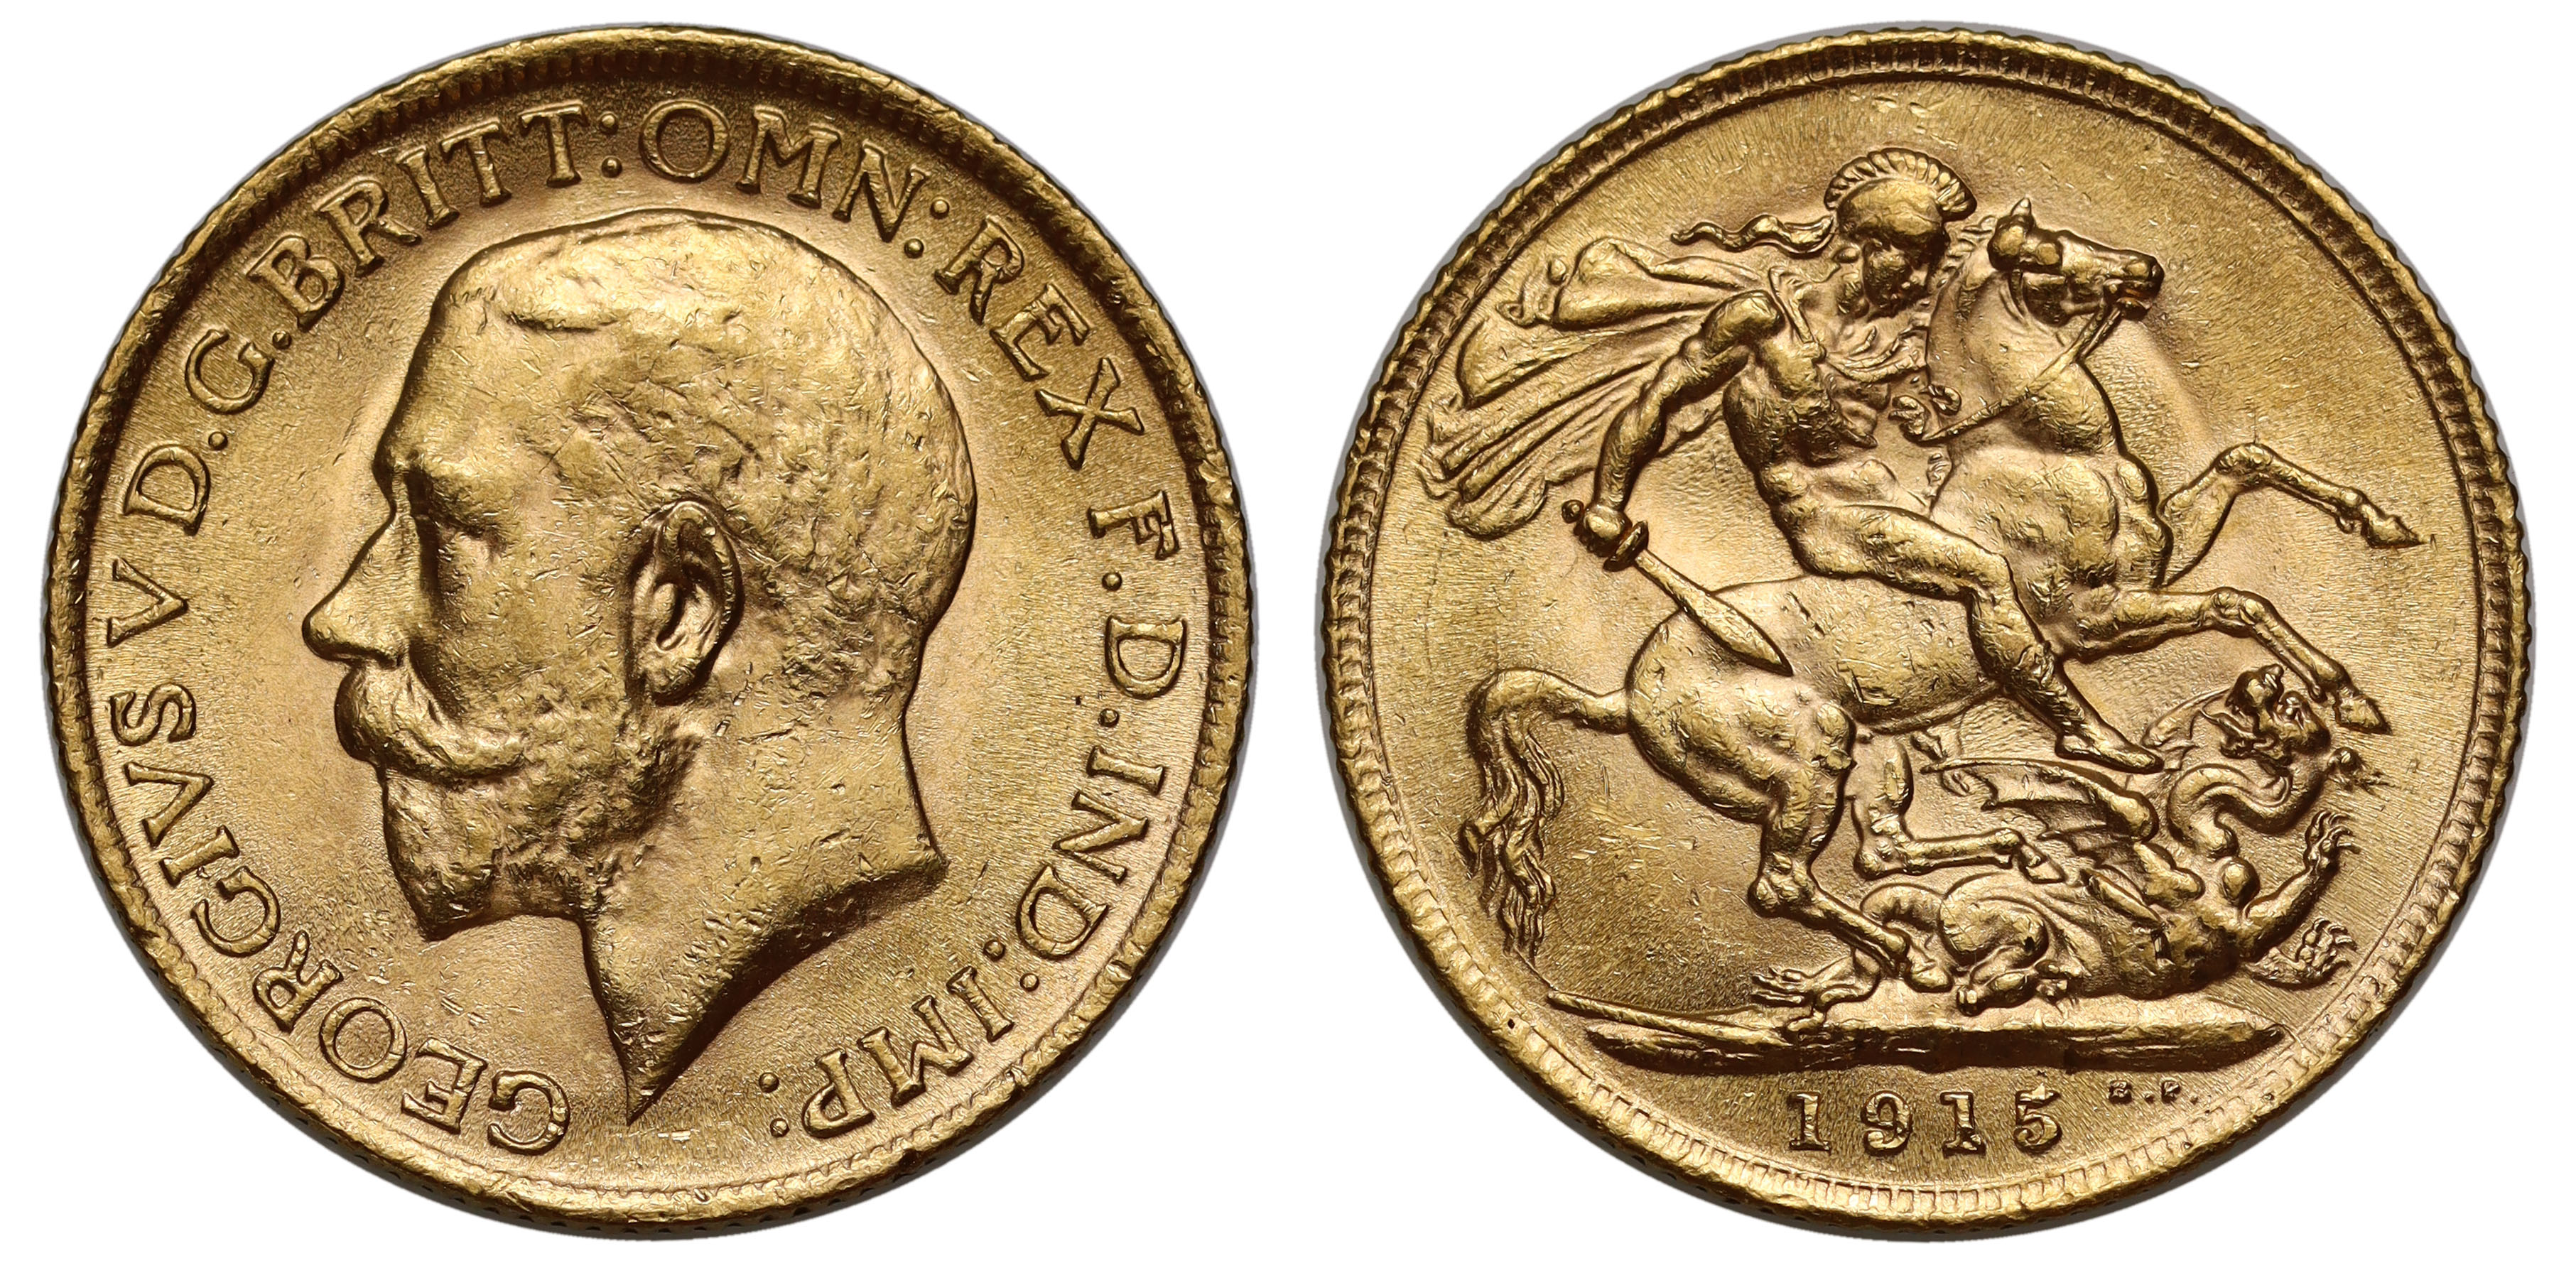 g George V (1910-36), gold Sovereign, 1915, bare head left, BM on truncation for engraver Bertram